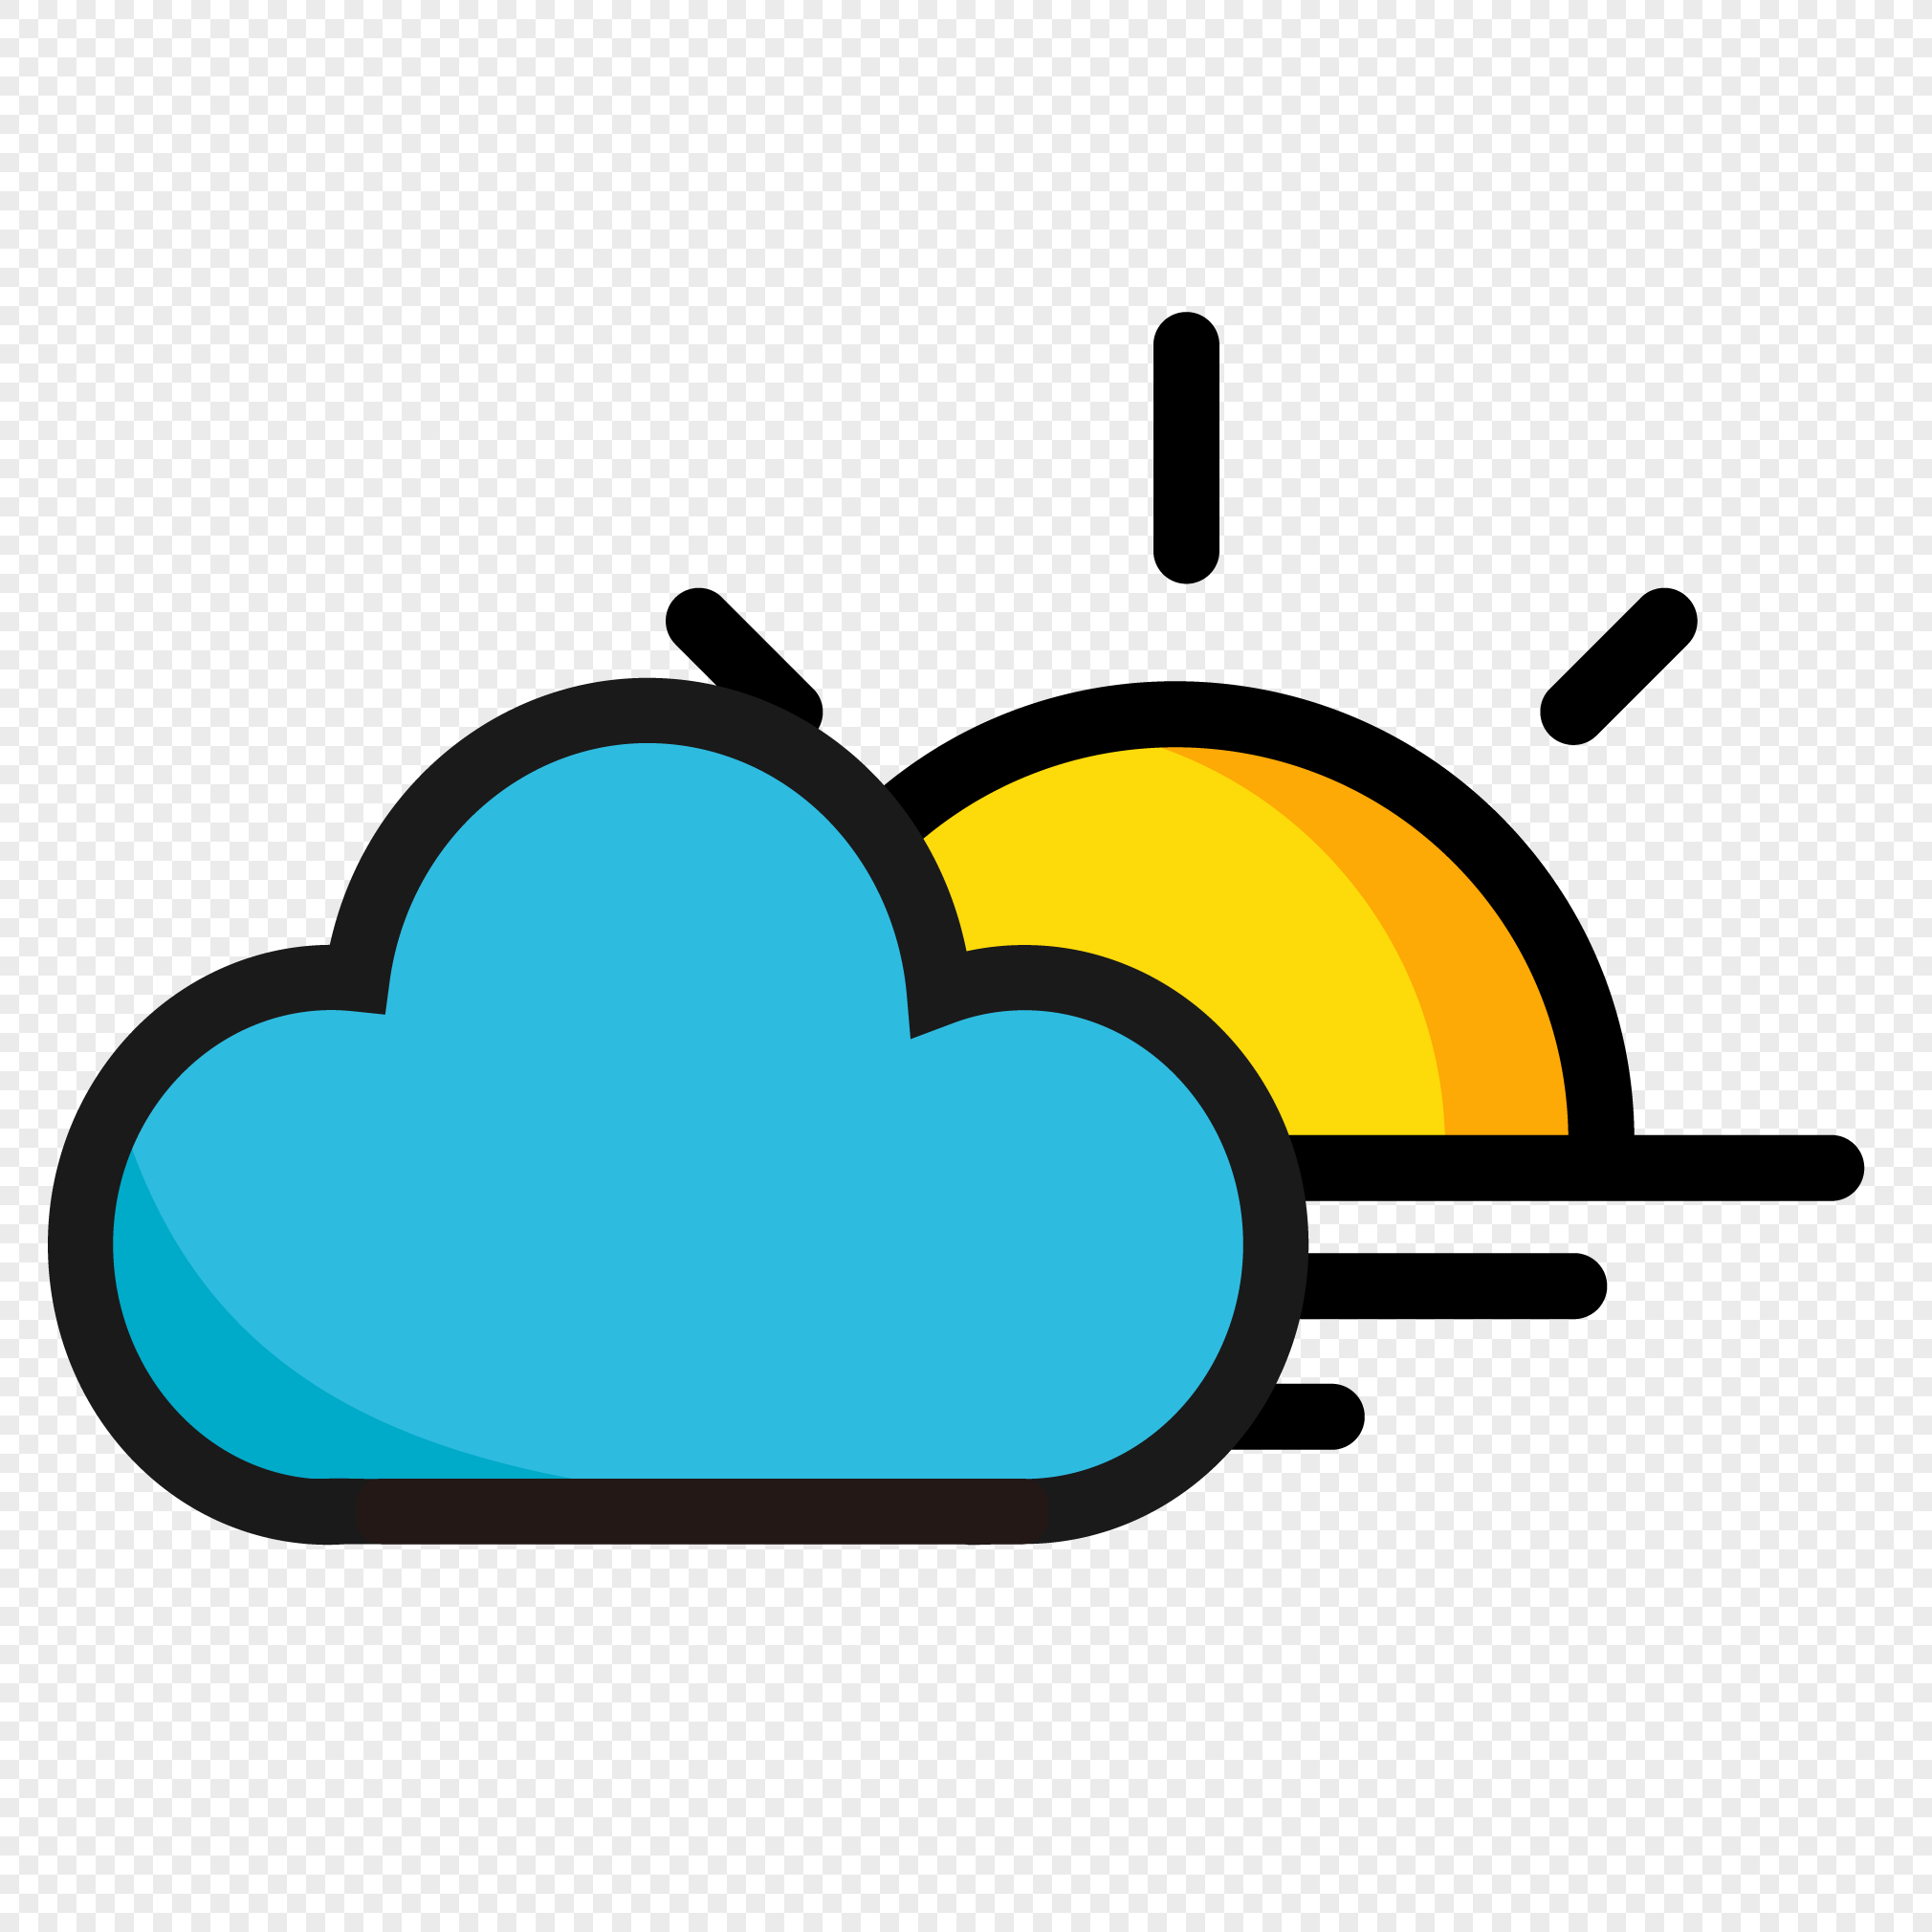 cloud icon transparent